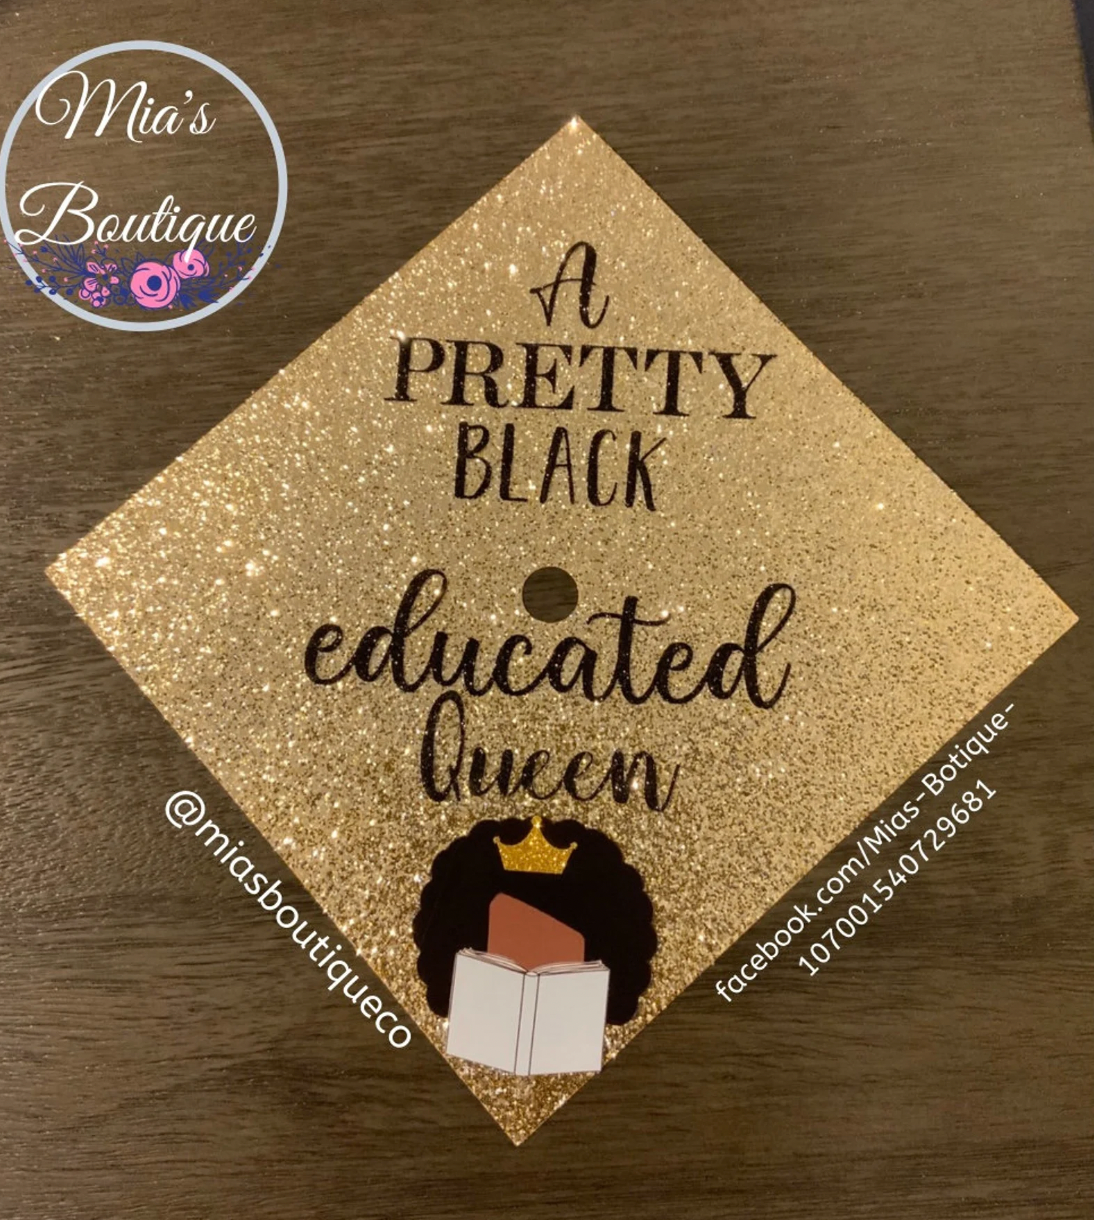 Pretty, Educated, Queen Graduation Cap cover/ Decorated Grad Cap cover/Floral Cap Topper/ Custom Graduation Cap Design/ Grad Cap Decor